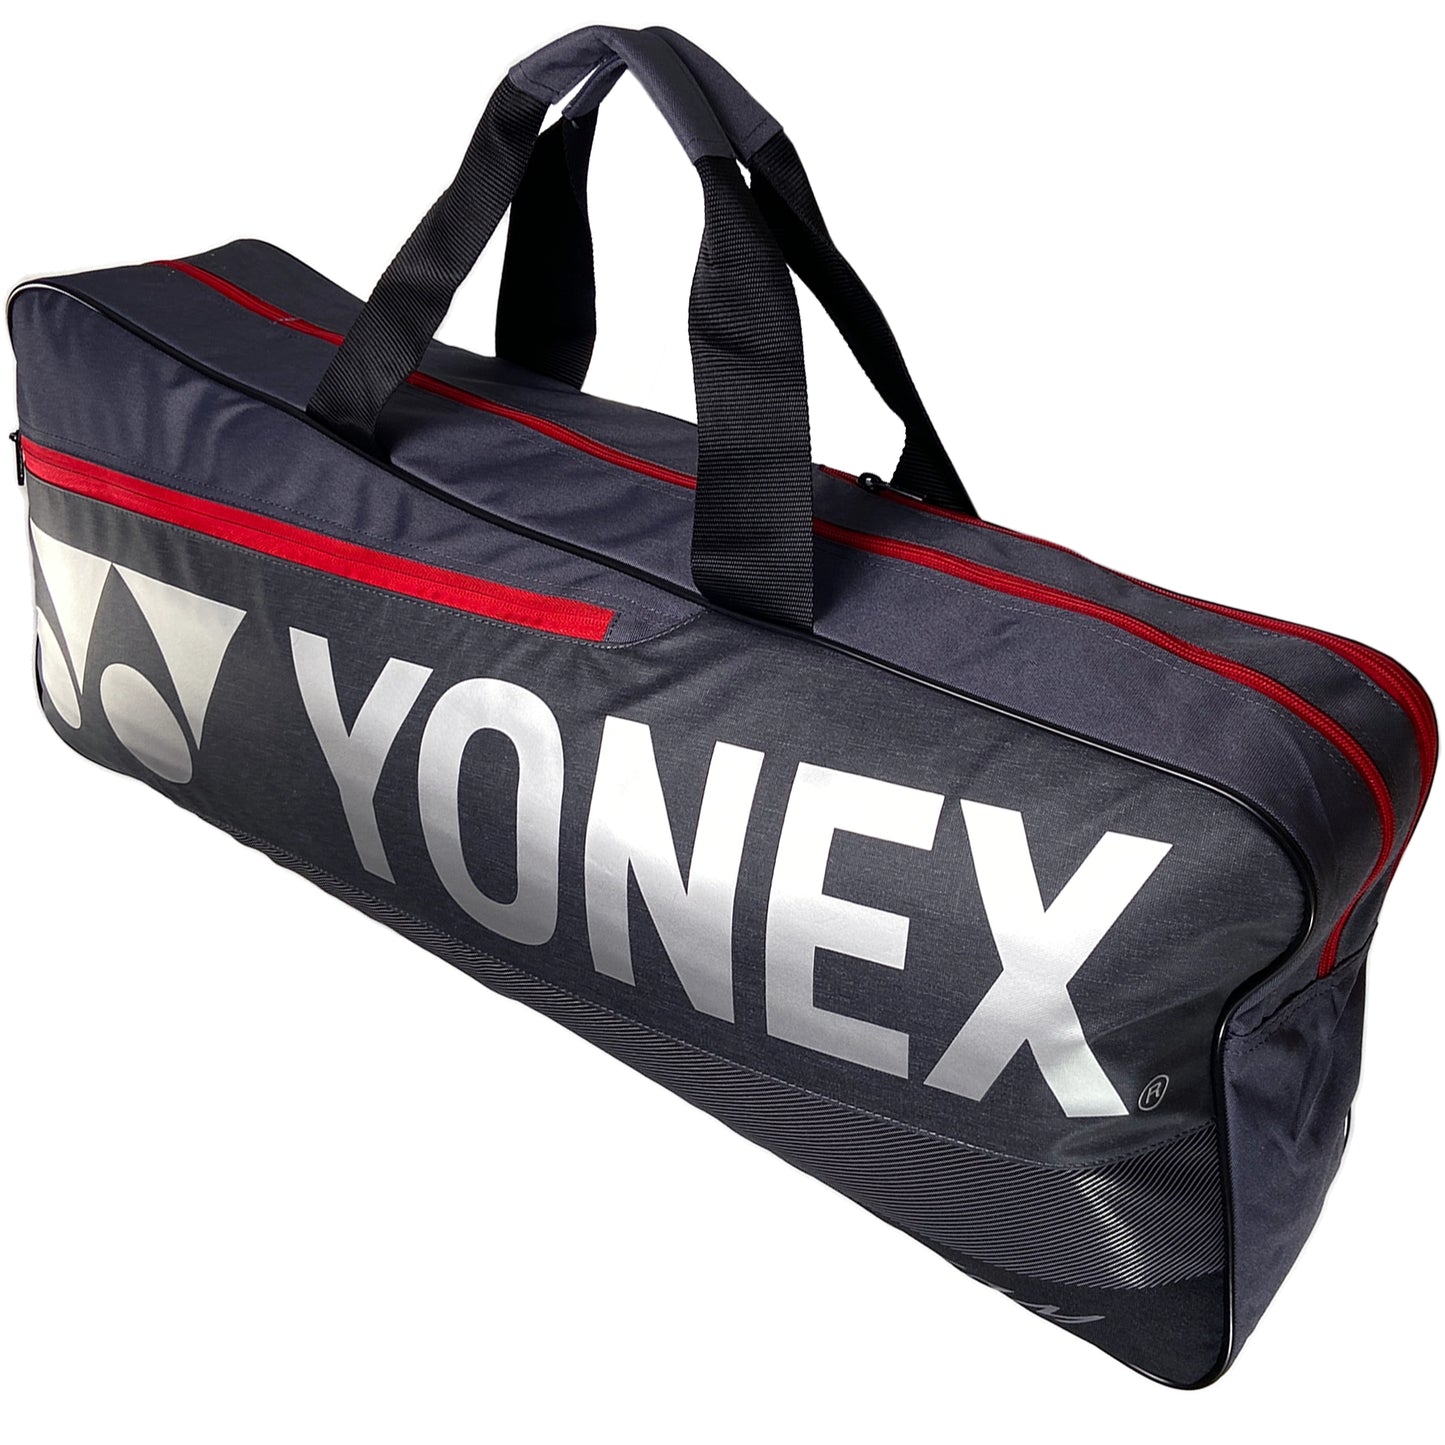 Yonex sac Team Tournament (BA42131WEX) Perle grisâtre